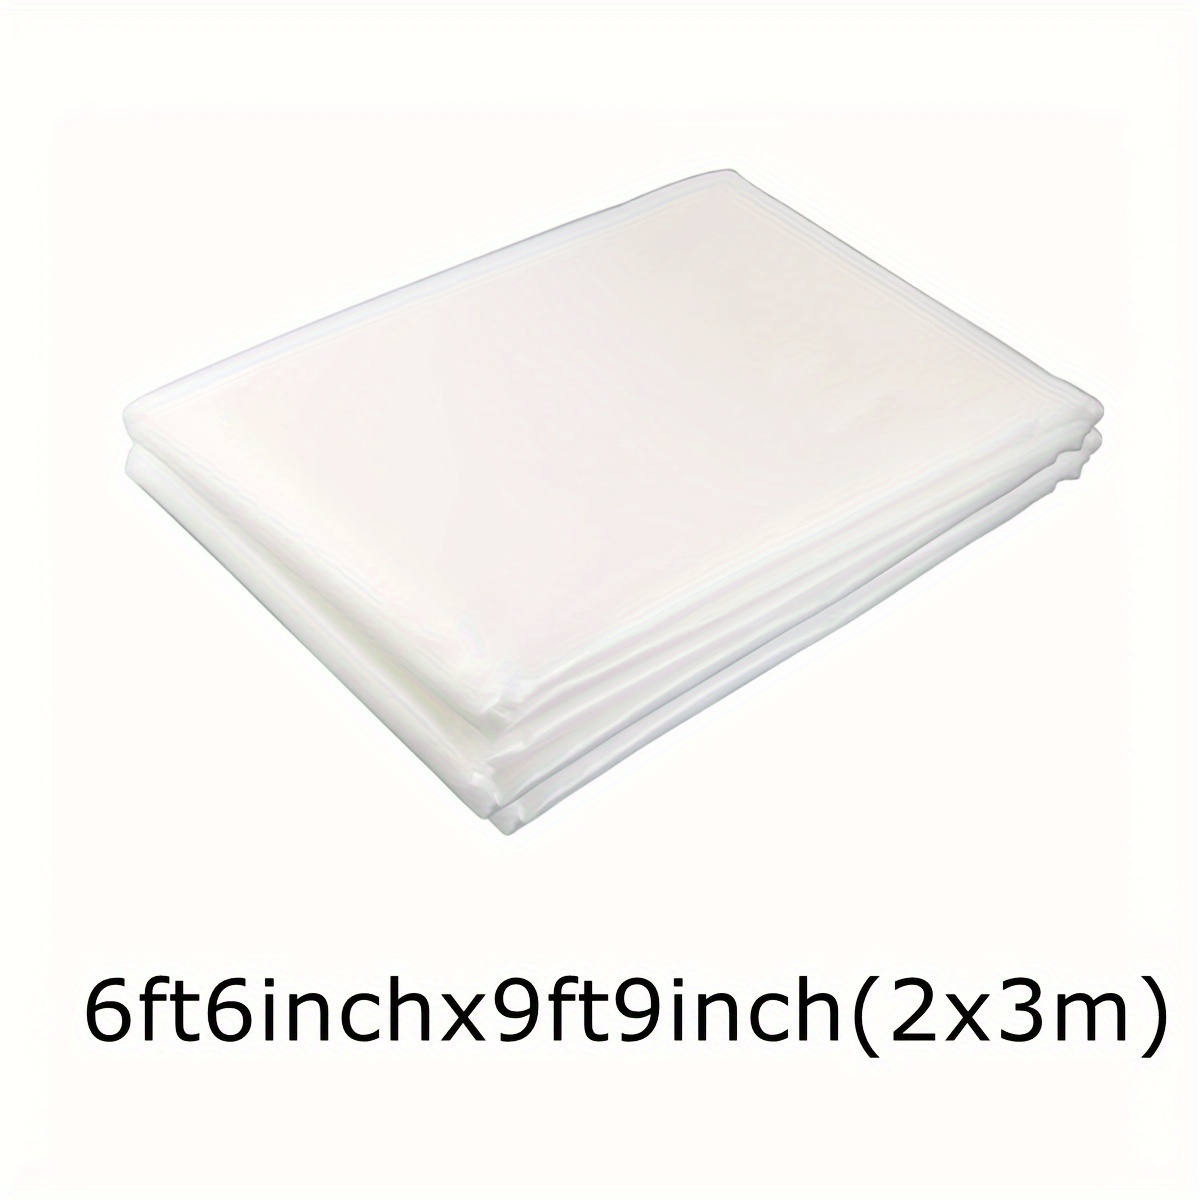 Paquete de 4 películas de plástico transparente para invernaderos de 6.5 x  9.8 pies, cubierta de polietileno resistente a los rayos UV para